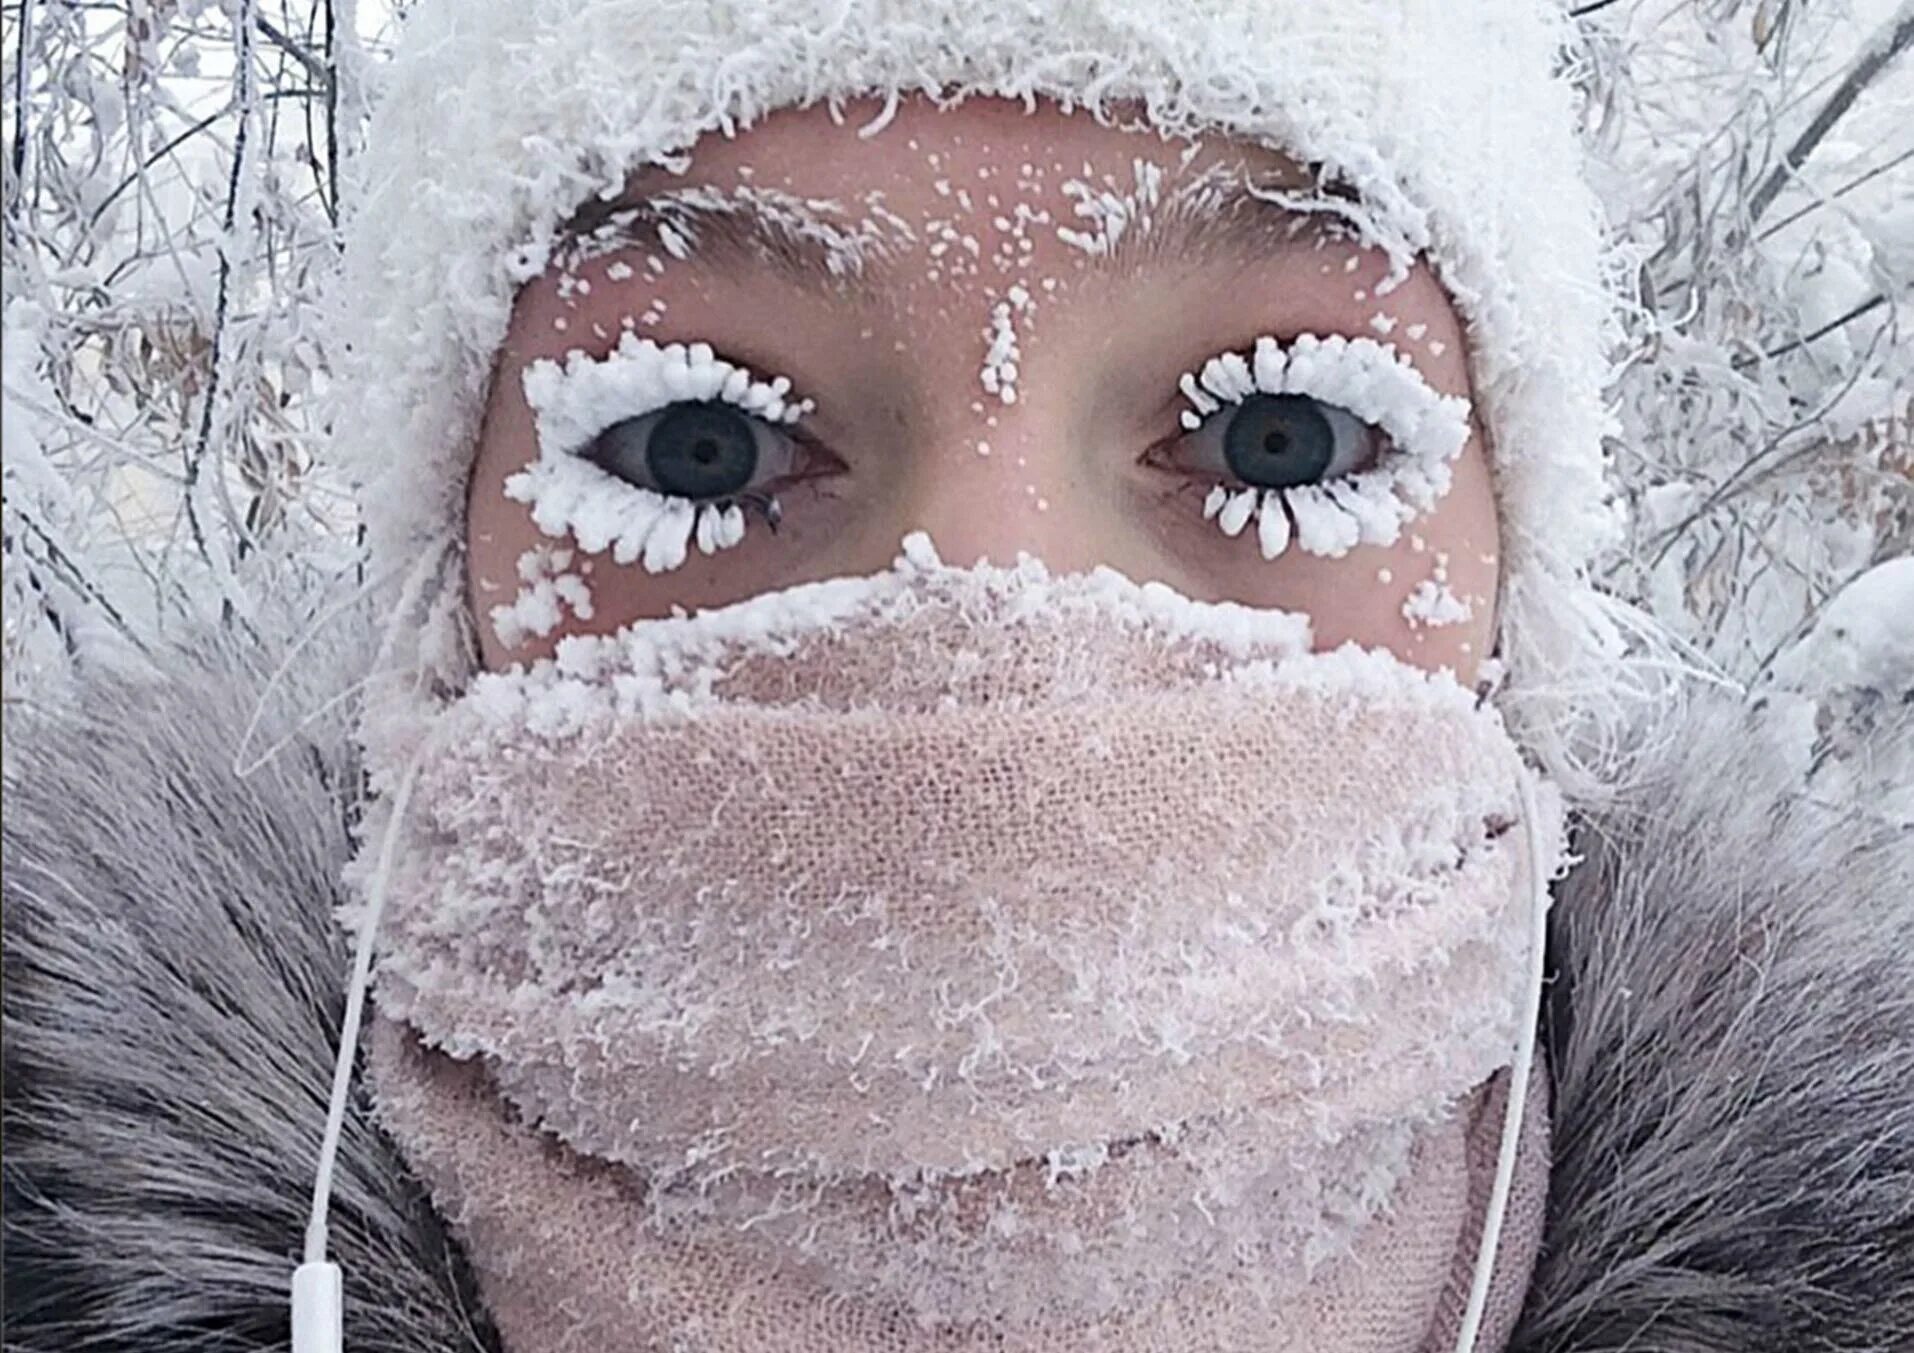 Меня тянет туда где морозы снега. Анастасия Груздева из Якутии. Анастасия Груздева Якутск. Девушка с замерзшими ресницами. Иней на лице.